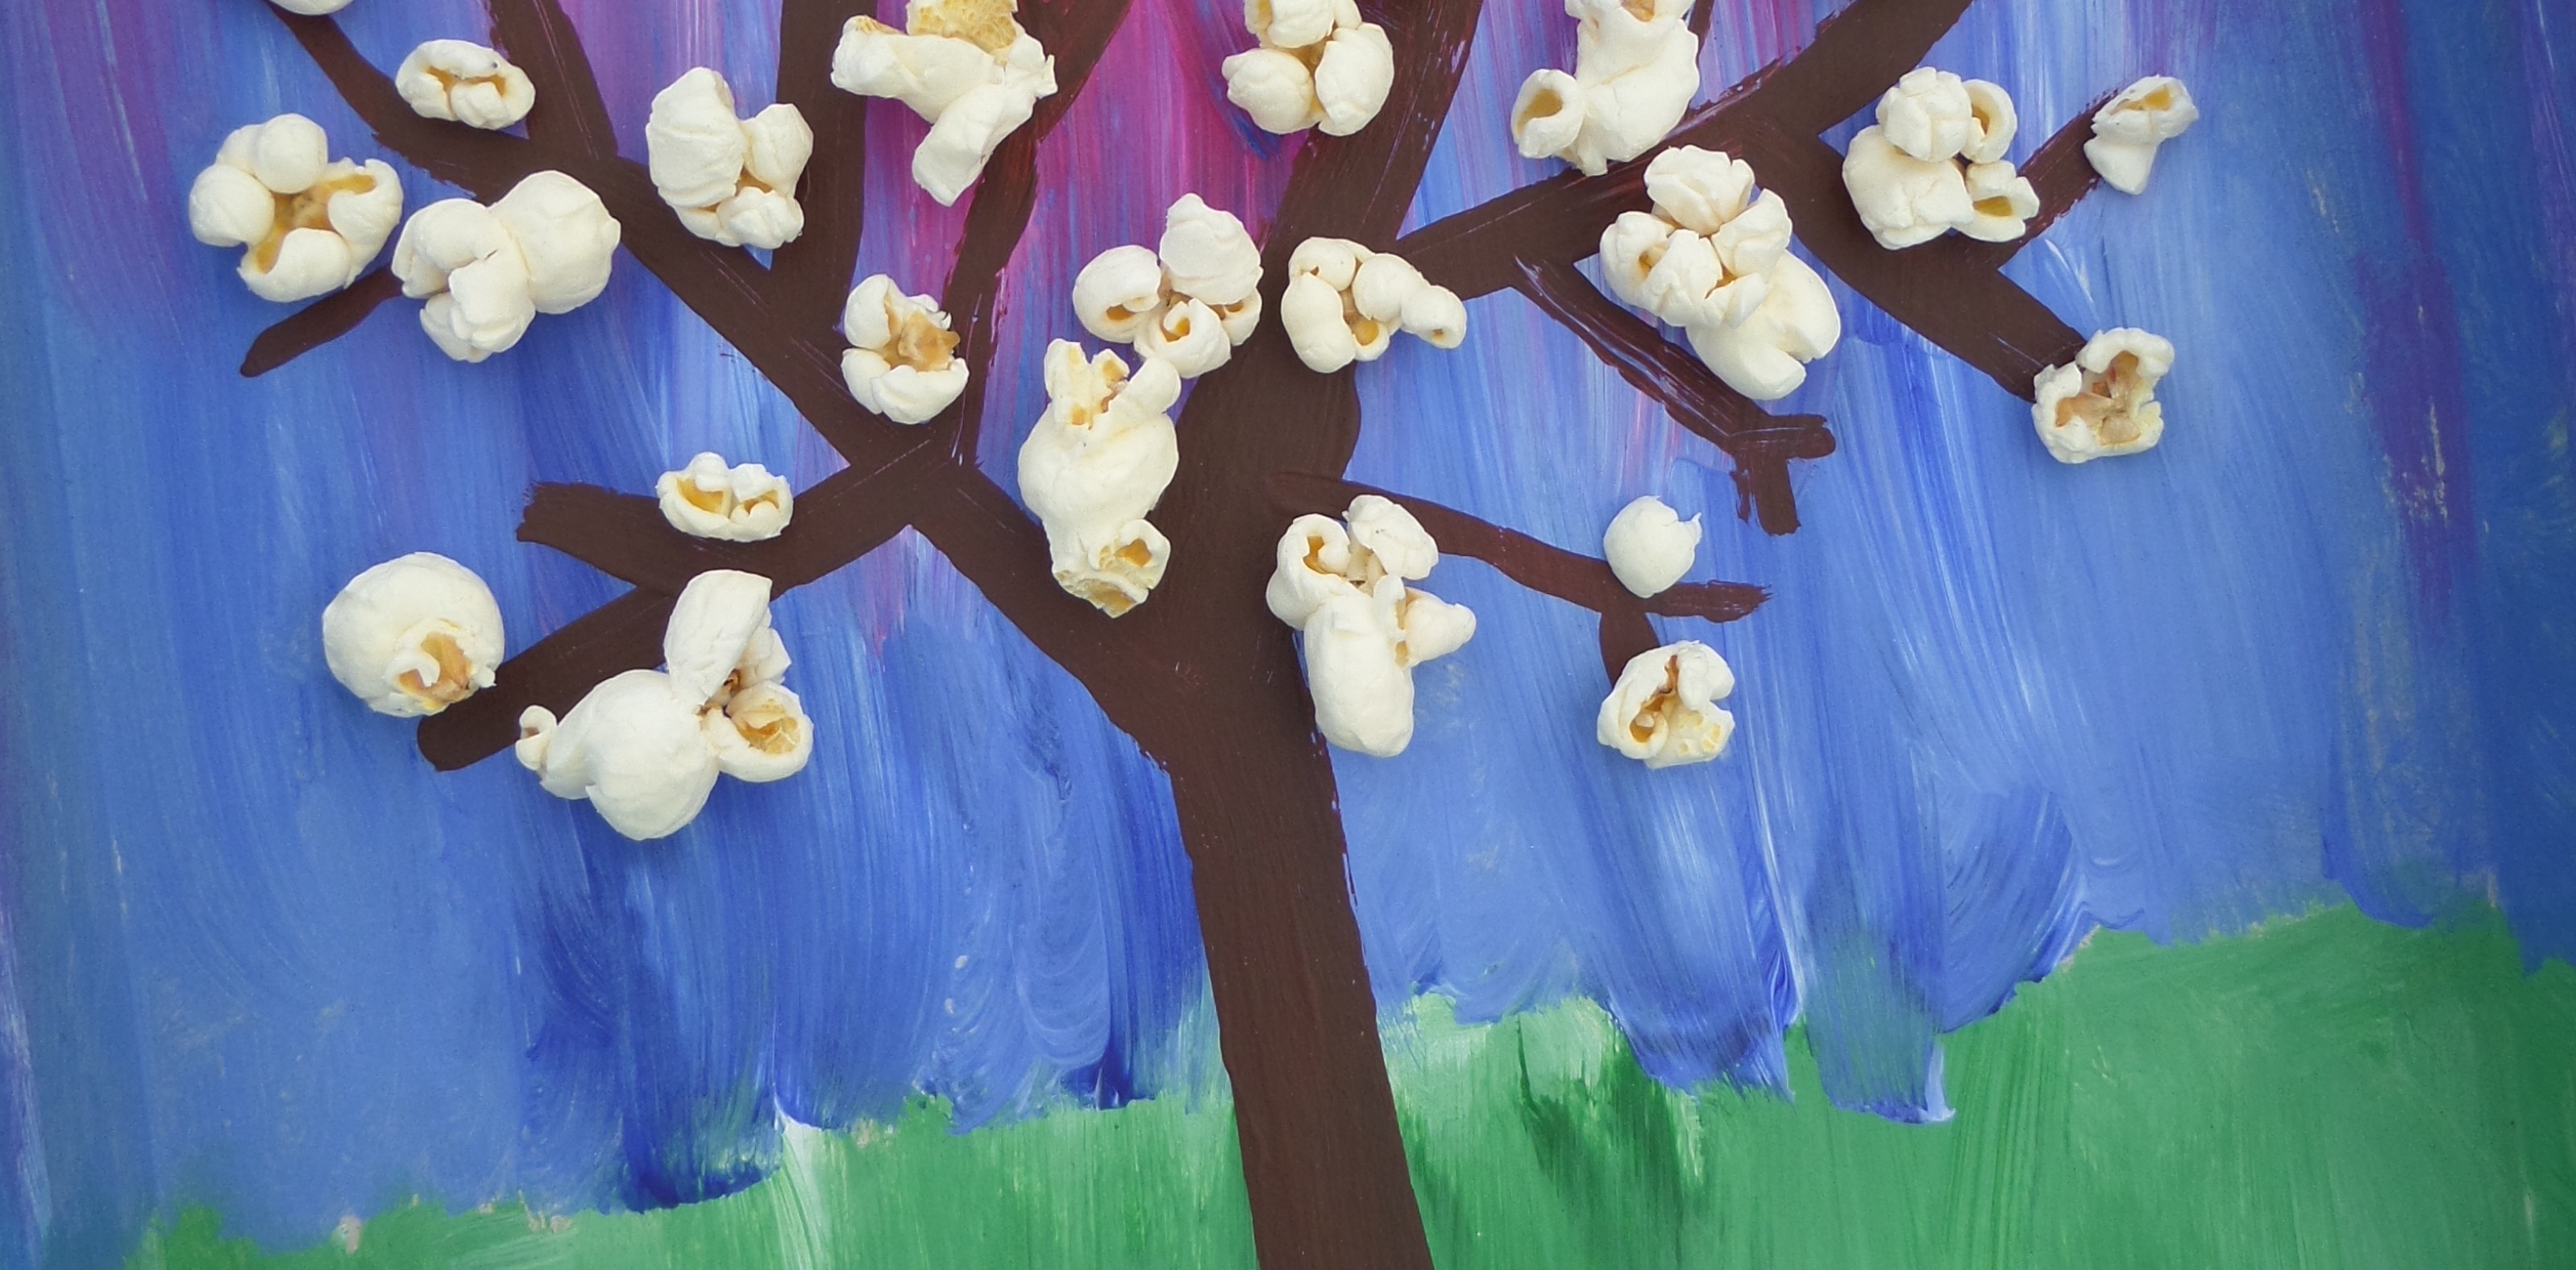 Wonderbaarlijk Voorjaar knutselen bloesemboom van popcorn AO-23